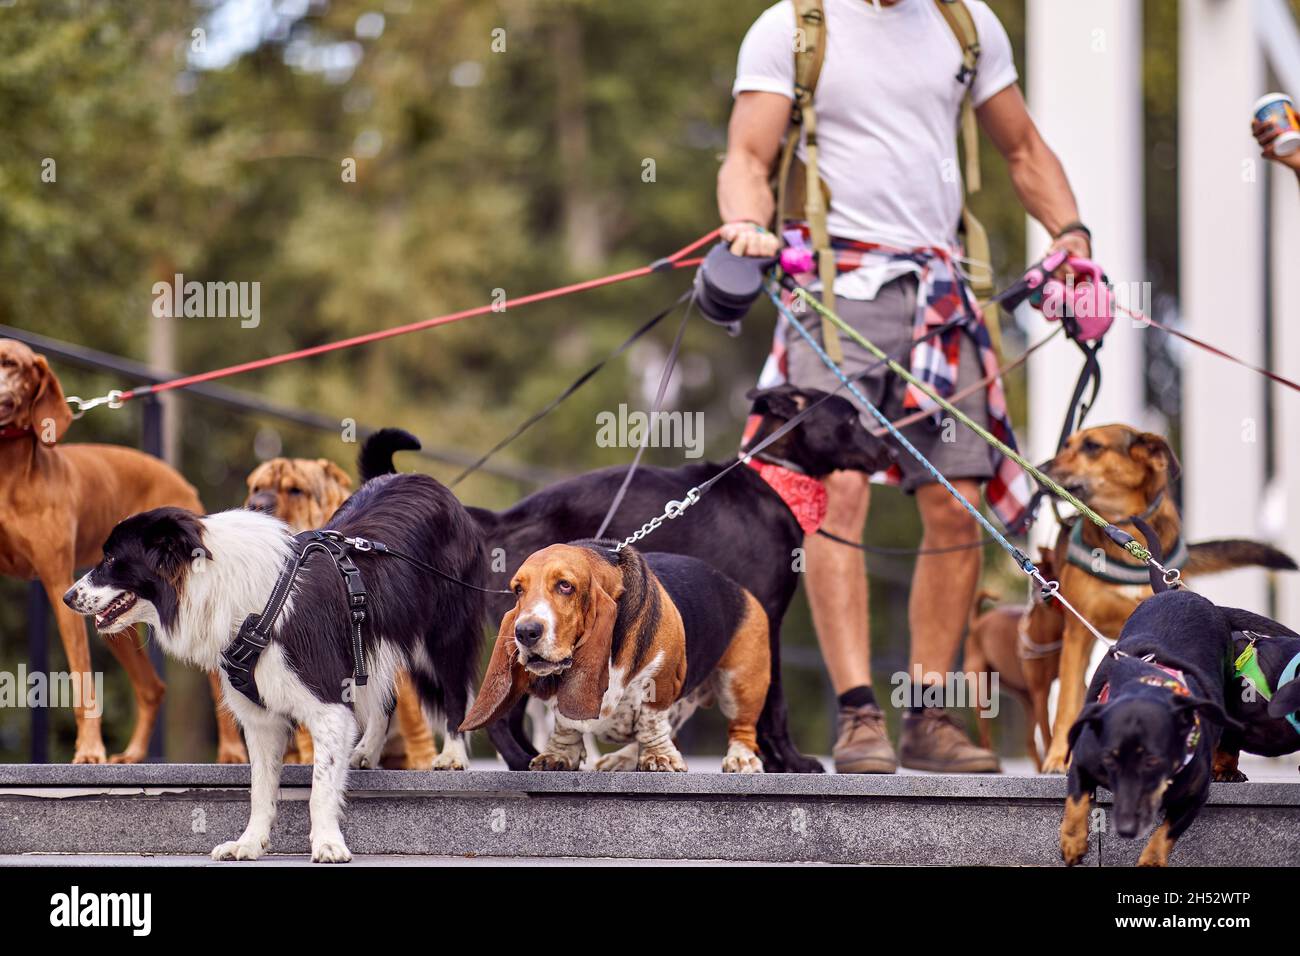 Jeune homme marcheur de chien travaillant outide; style de vie marcheur de chien Banque D'Images